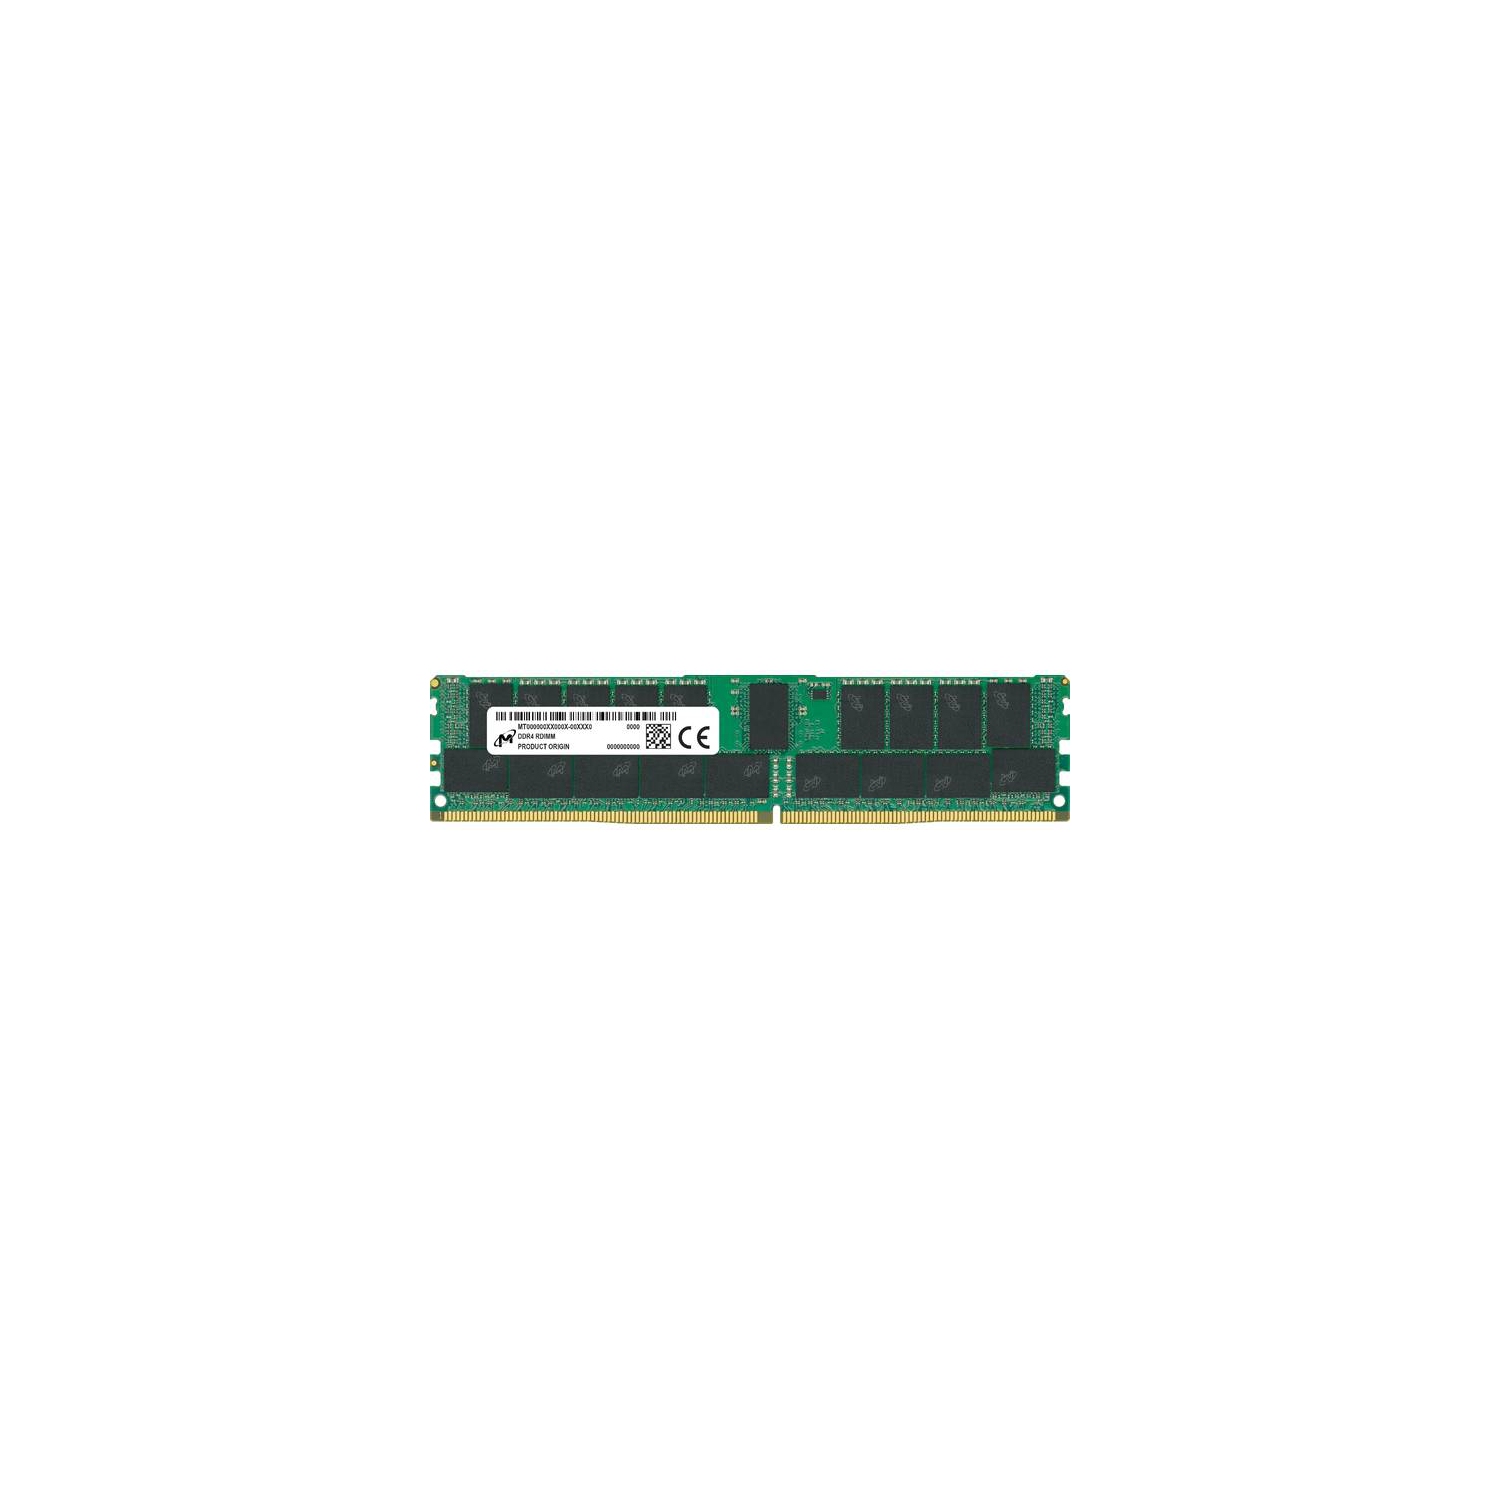 週間売れ筋 Micron DDR4-3200 64GB 8Gx72 ECC REG CL22 サーバーメモリ modernrock.ru